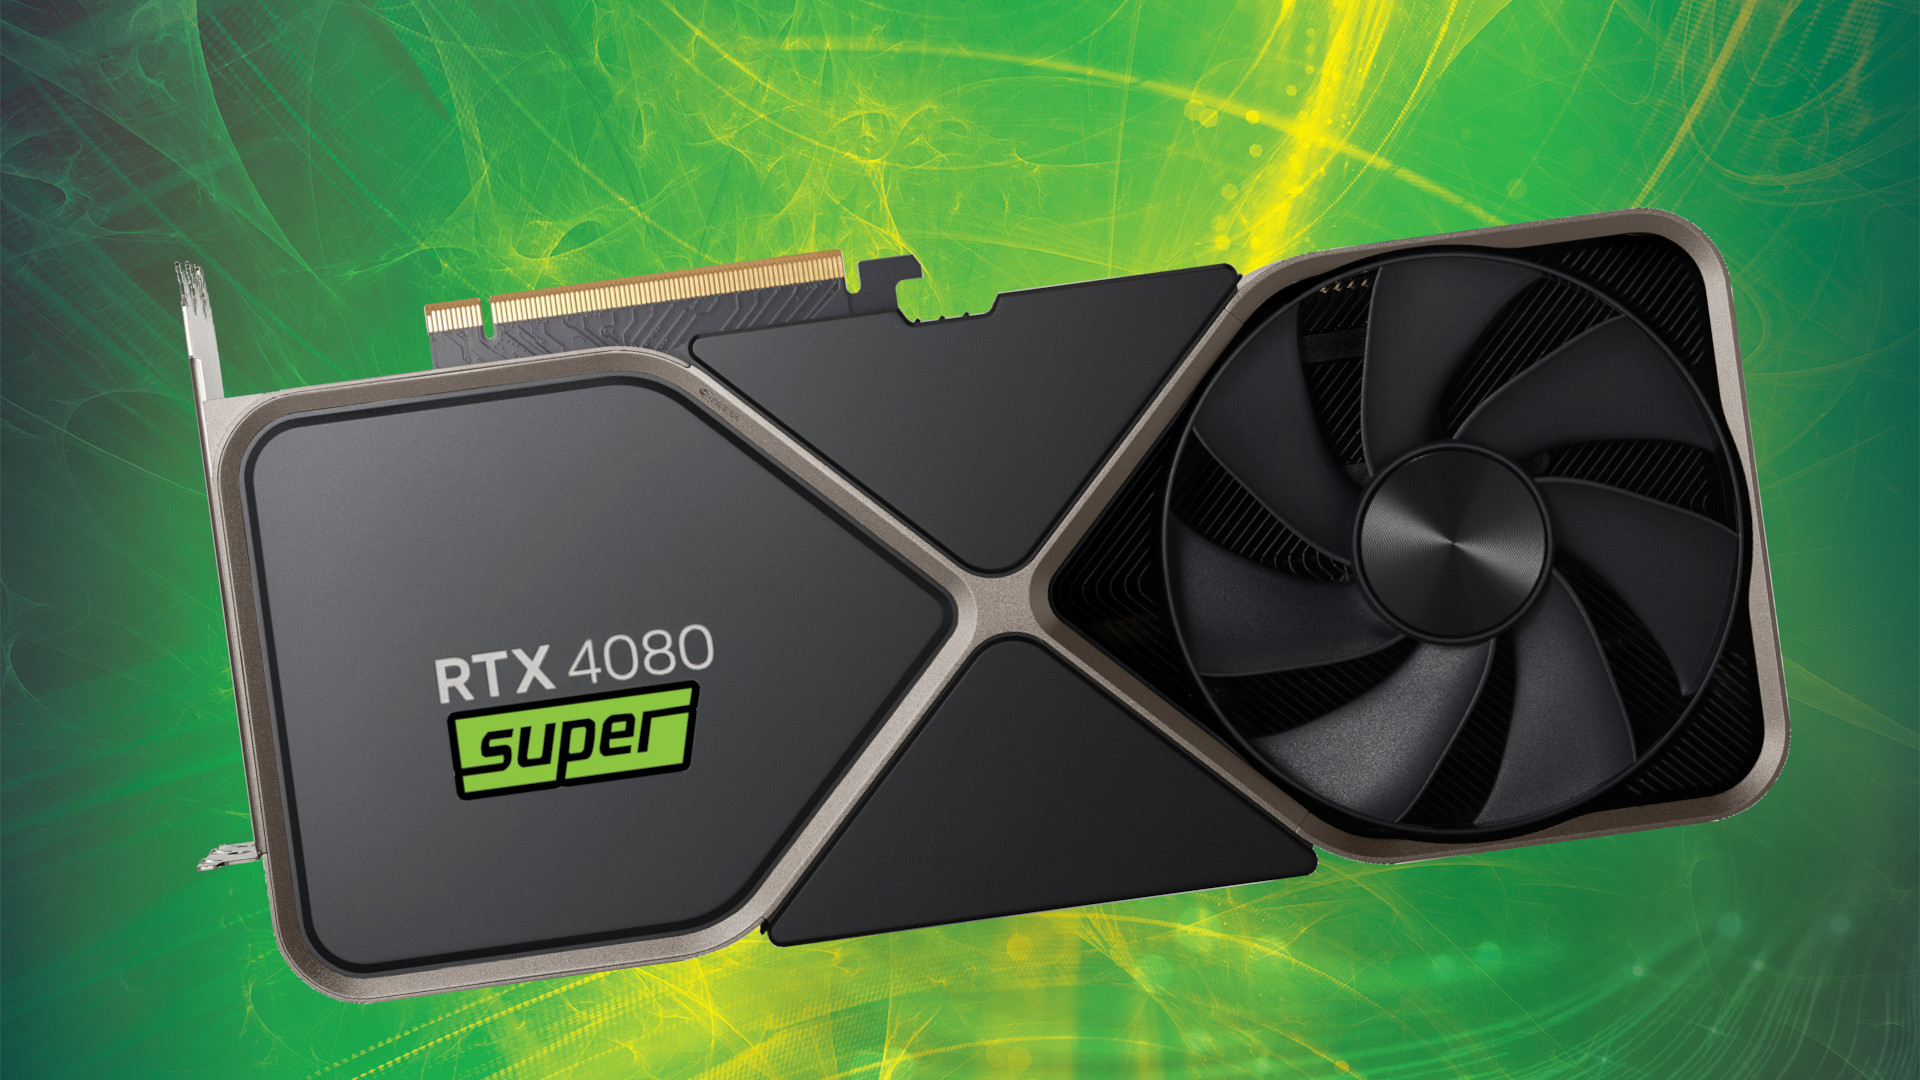 Thông tin rò rỉ bảng đánh giá hiệu năng GPU NVIDIA GeForce RTX 4080 SUPER cho thấy hiệu suất tương đồng với RTX 4080 thường